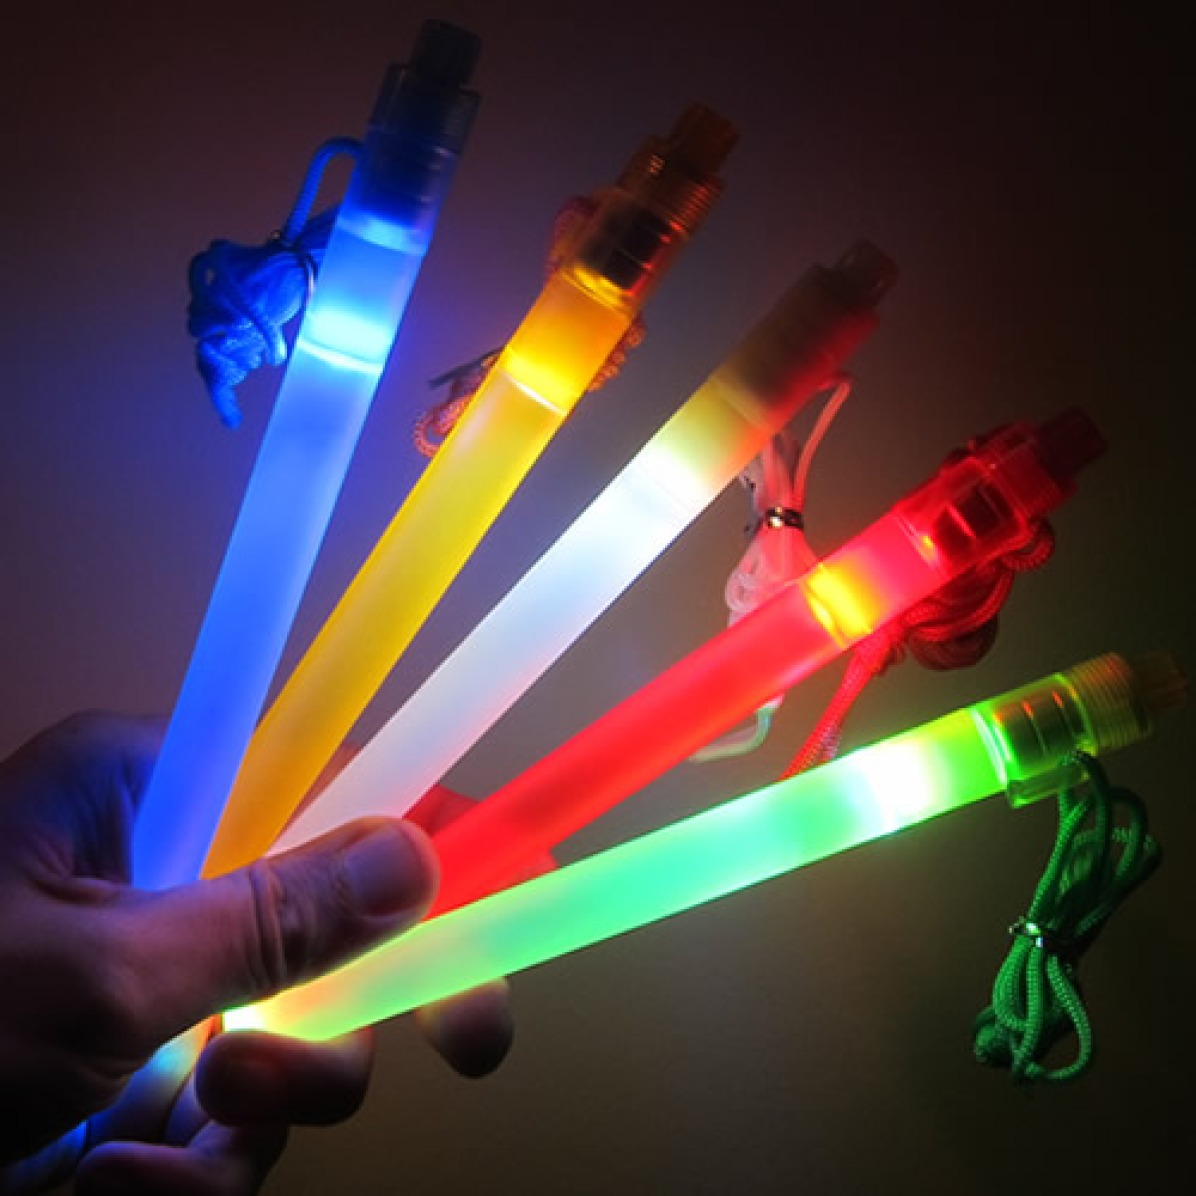 7 Inch LED Safety Light Sticks